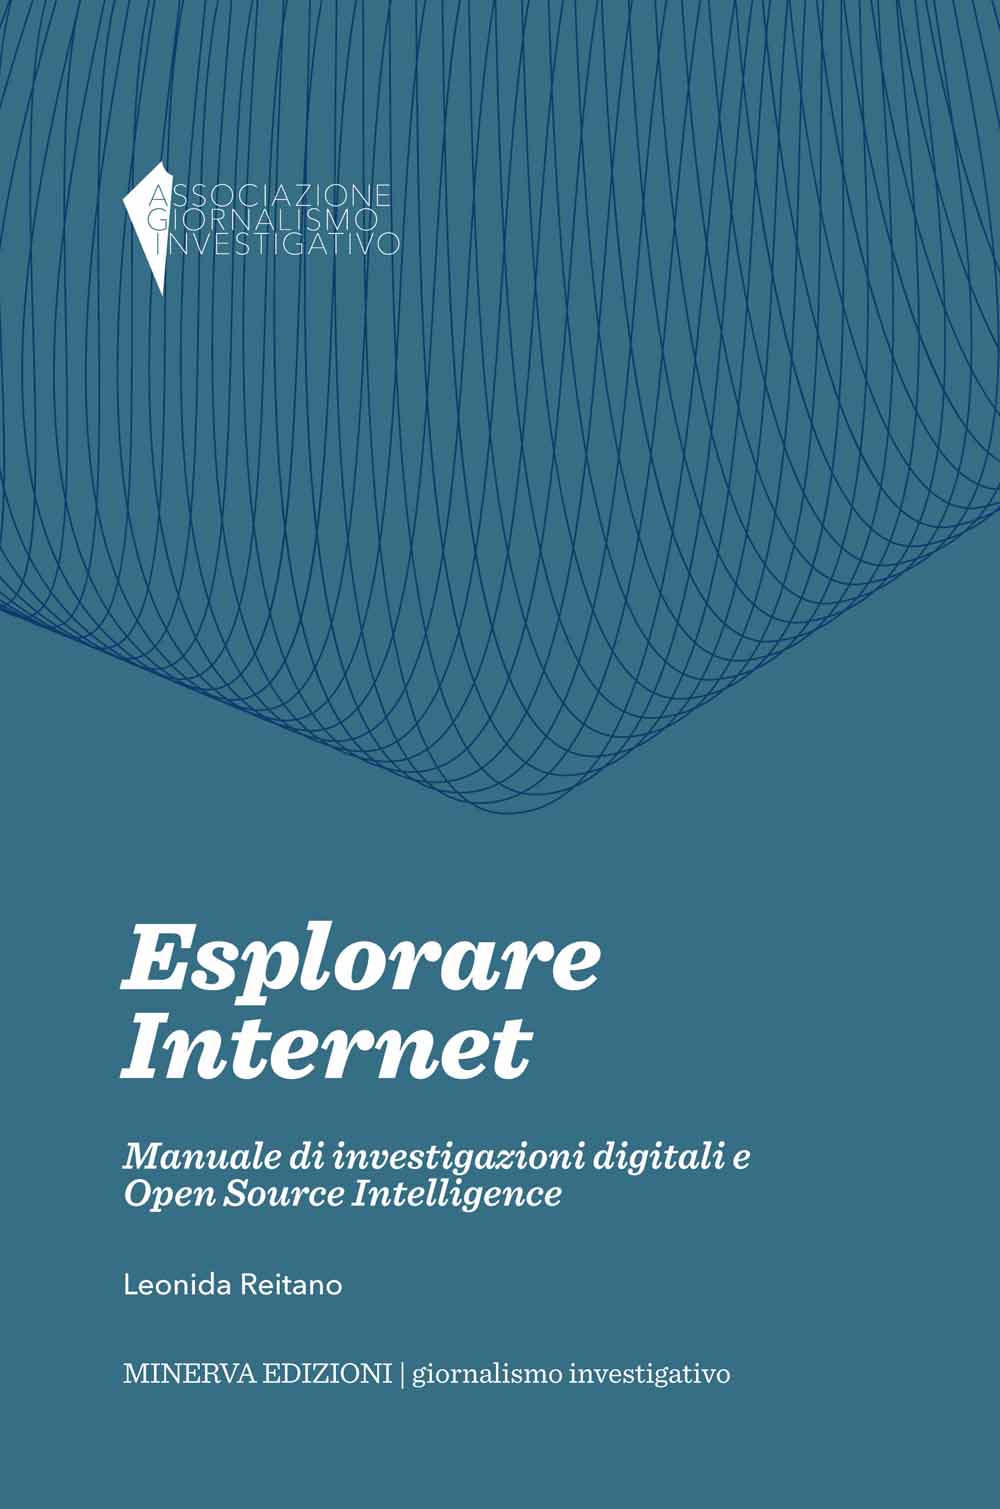 Libri Leonida Reitano - Esplorare Internet. Manuale Di Investigazioni Digitali E Open Source Intelligence NUOVO SIGILLATO, EDIZIONE DEL 20/01/2014 SUBITO DISPONIBILE